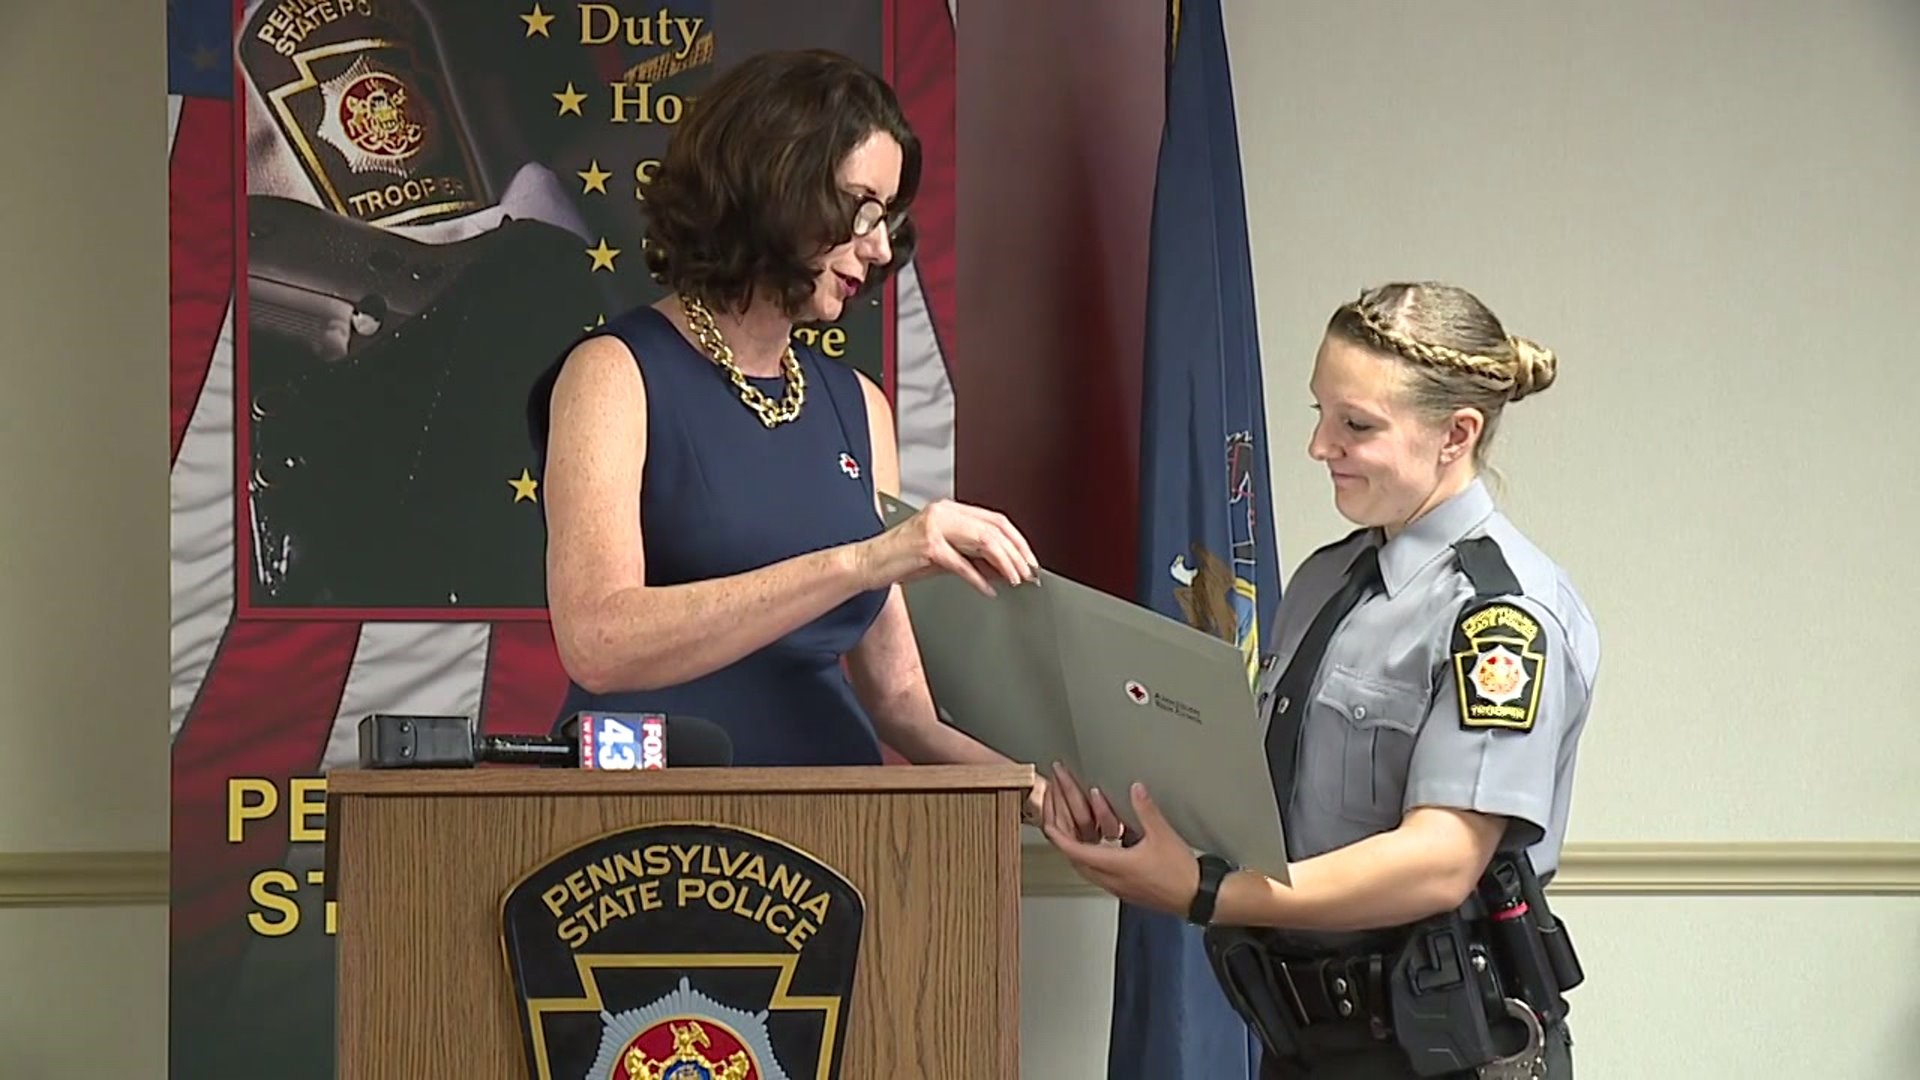 PA State Police lifesaving award